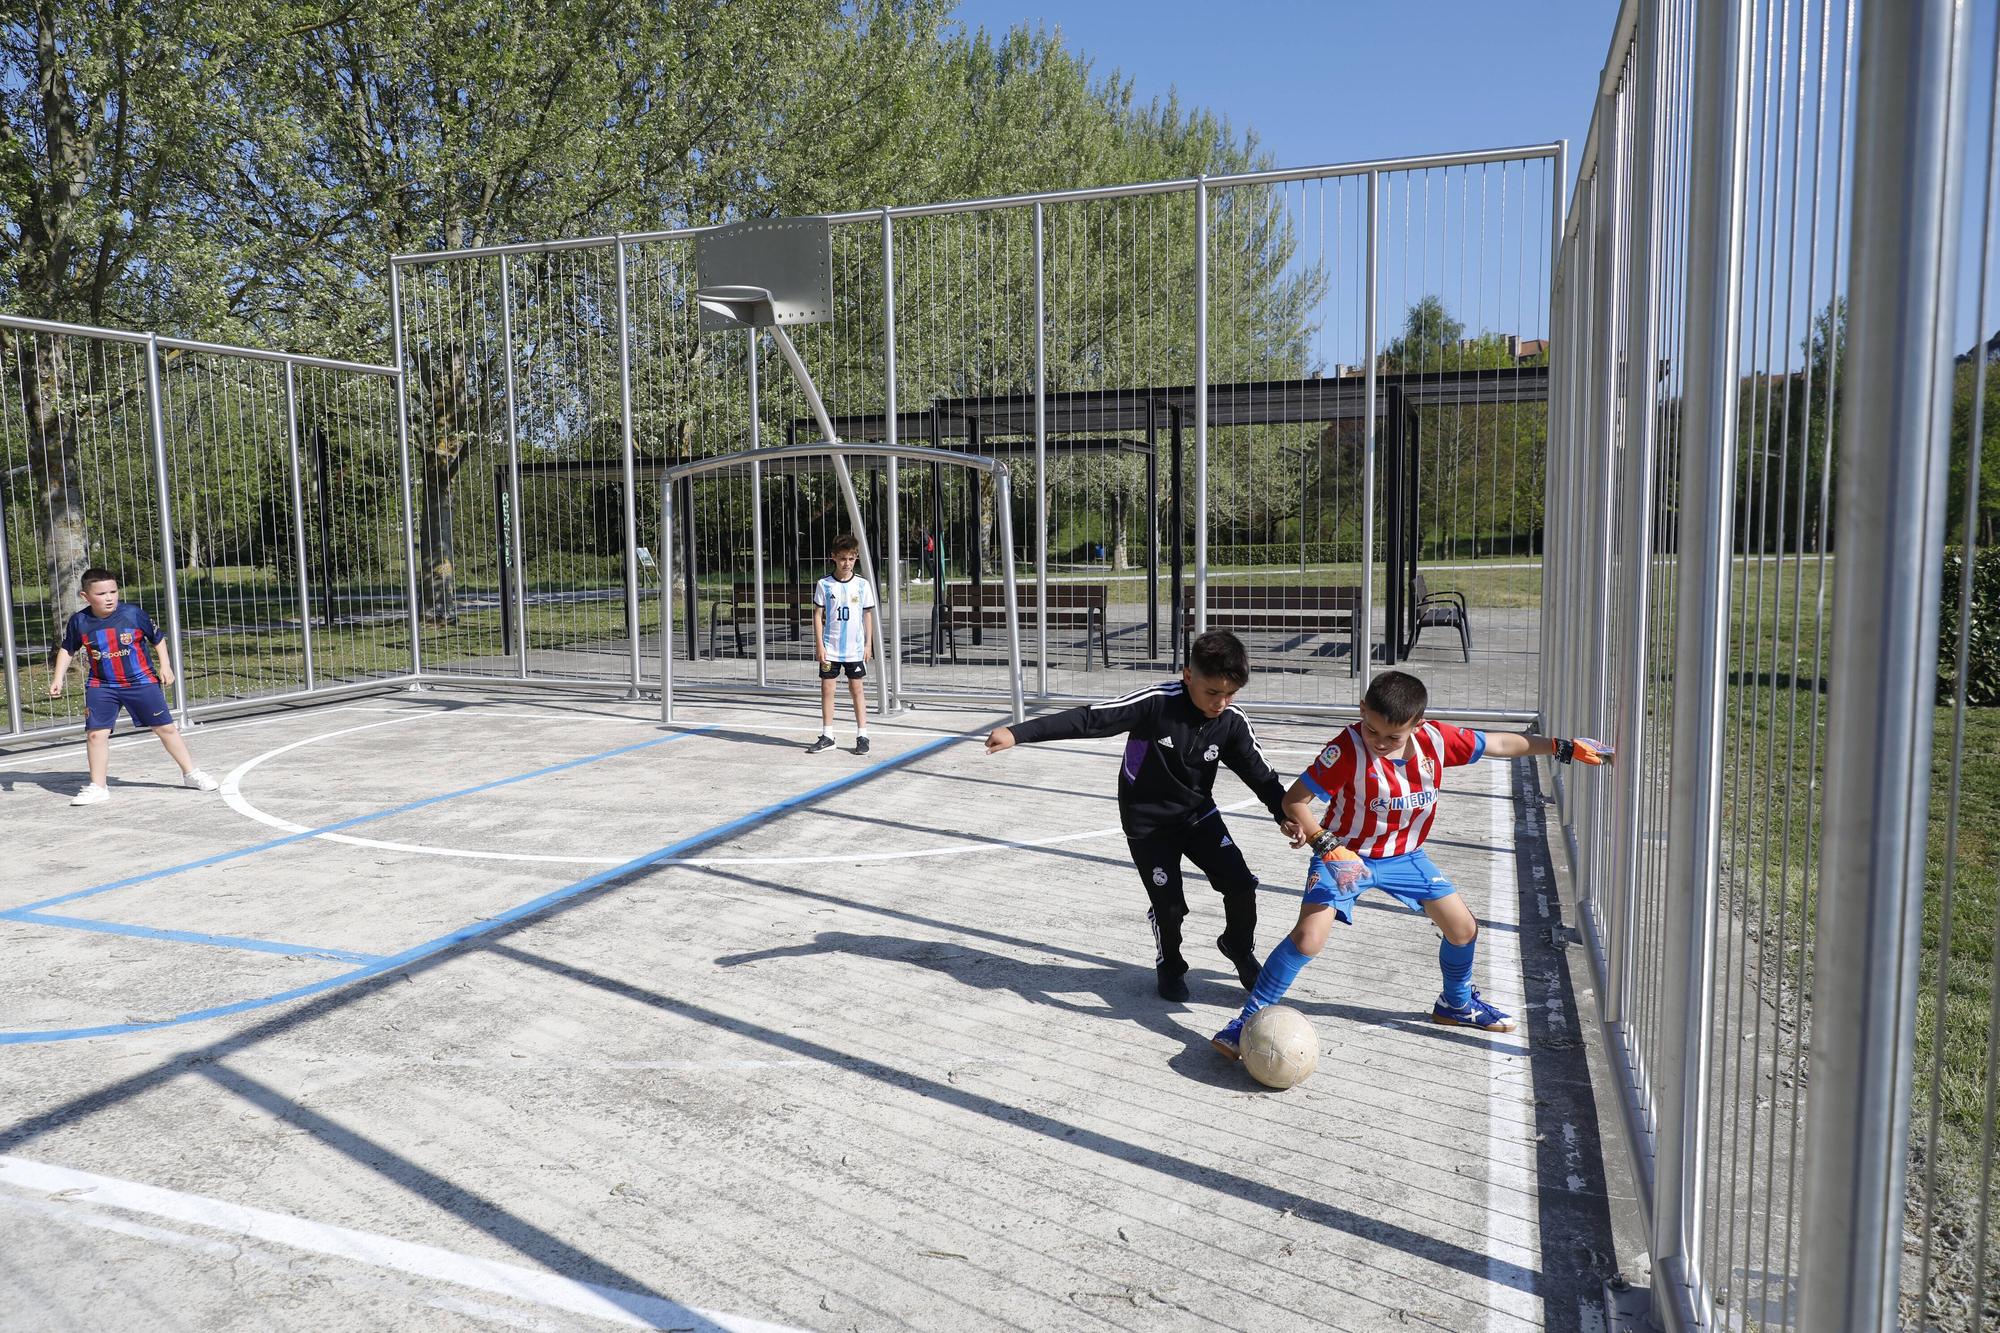 En imágenes: Nuevas diversiones en los parques de Gijón: así disfrutan los pequeños de las novedades en las zonas infantiles